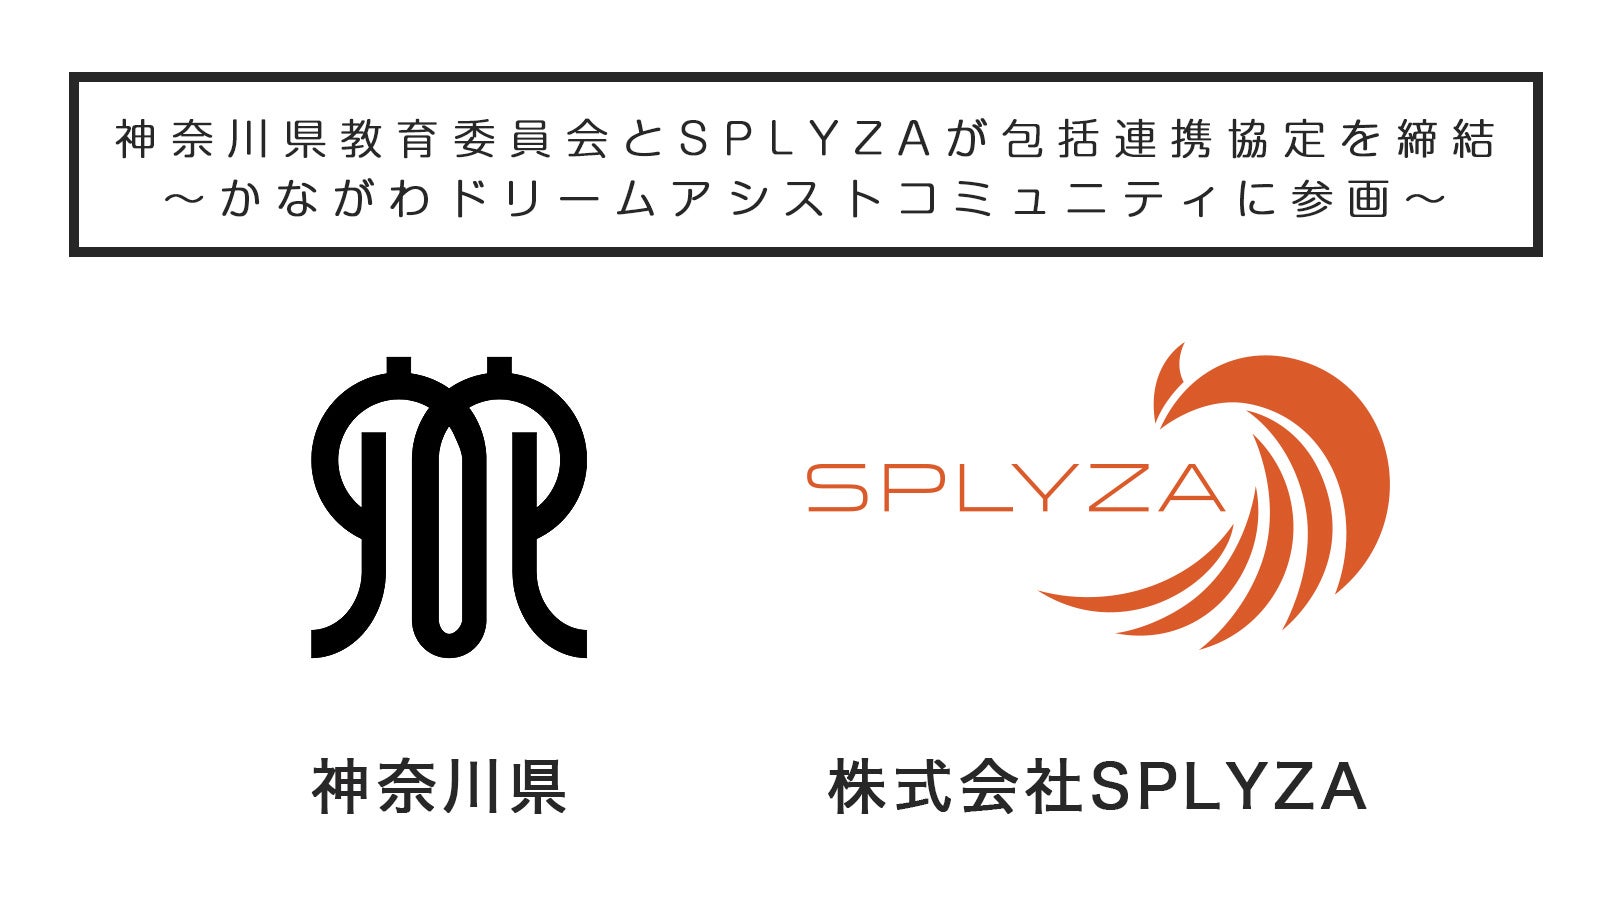 神奈川県教育委員会とSPLYZAは教育活動支援のため3月1日に包括連携協定締結